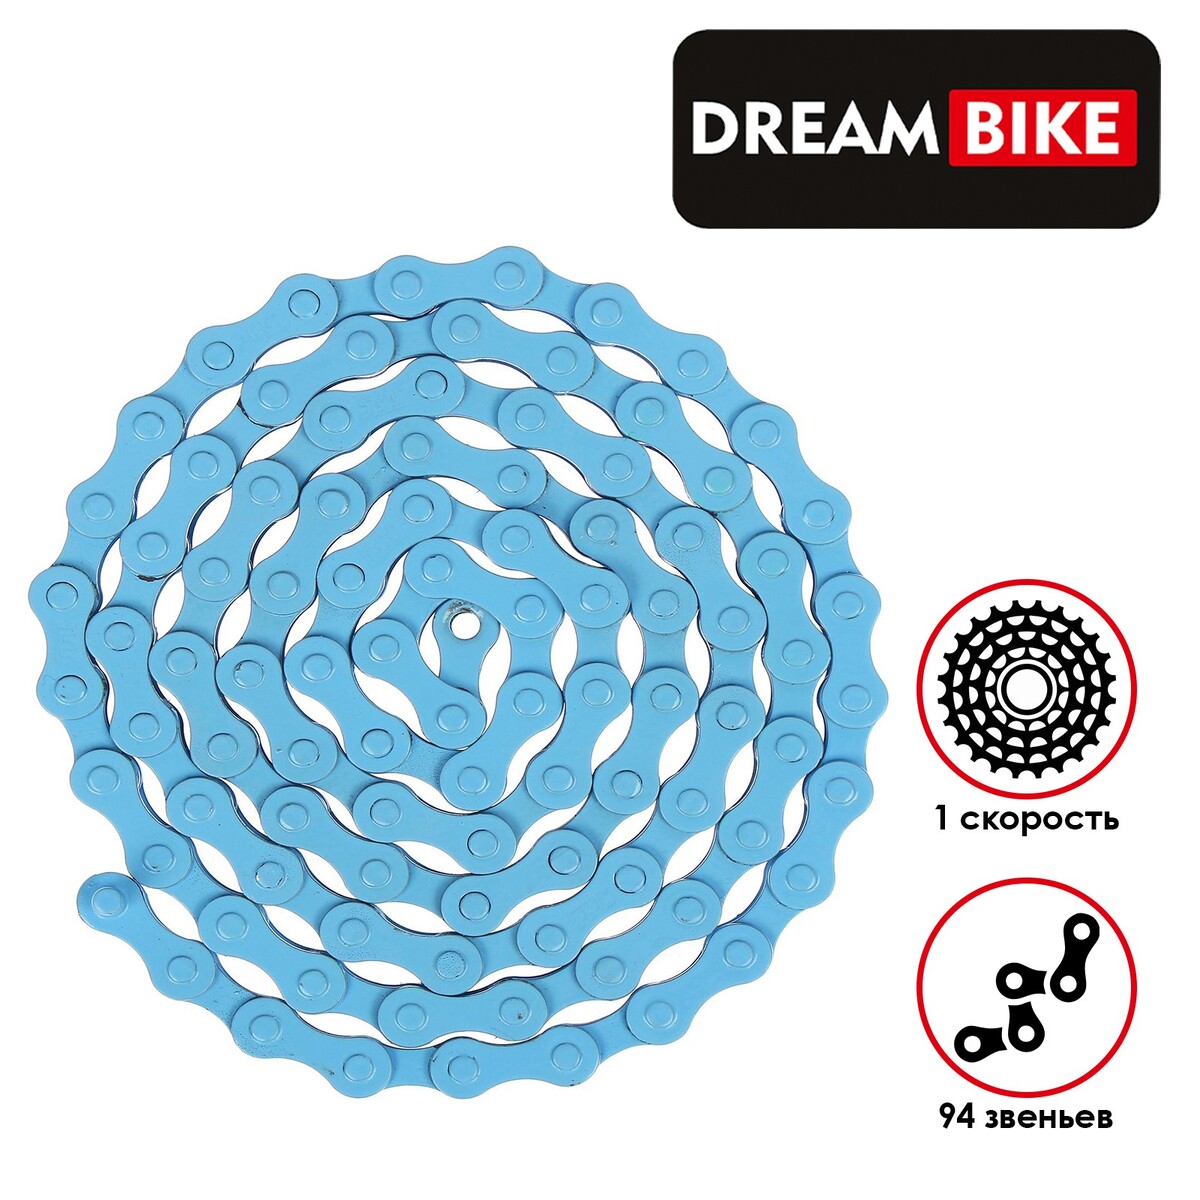 Цепь dream bike, 1 скорость, цвет синий аптечка велосипедная dream bike 6 заплаток самоклейка